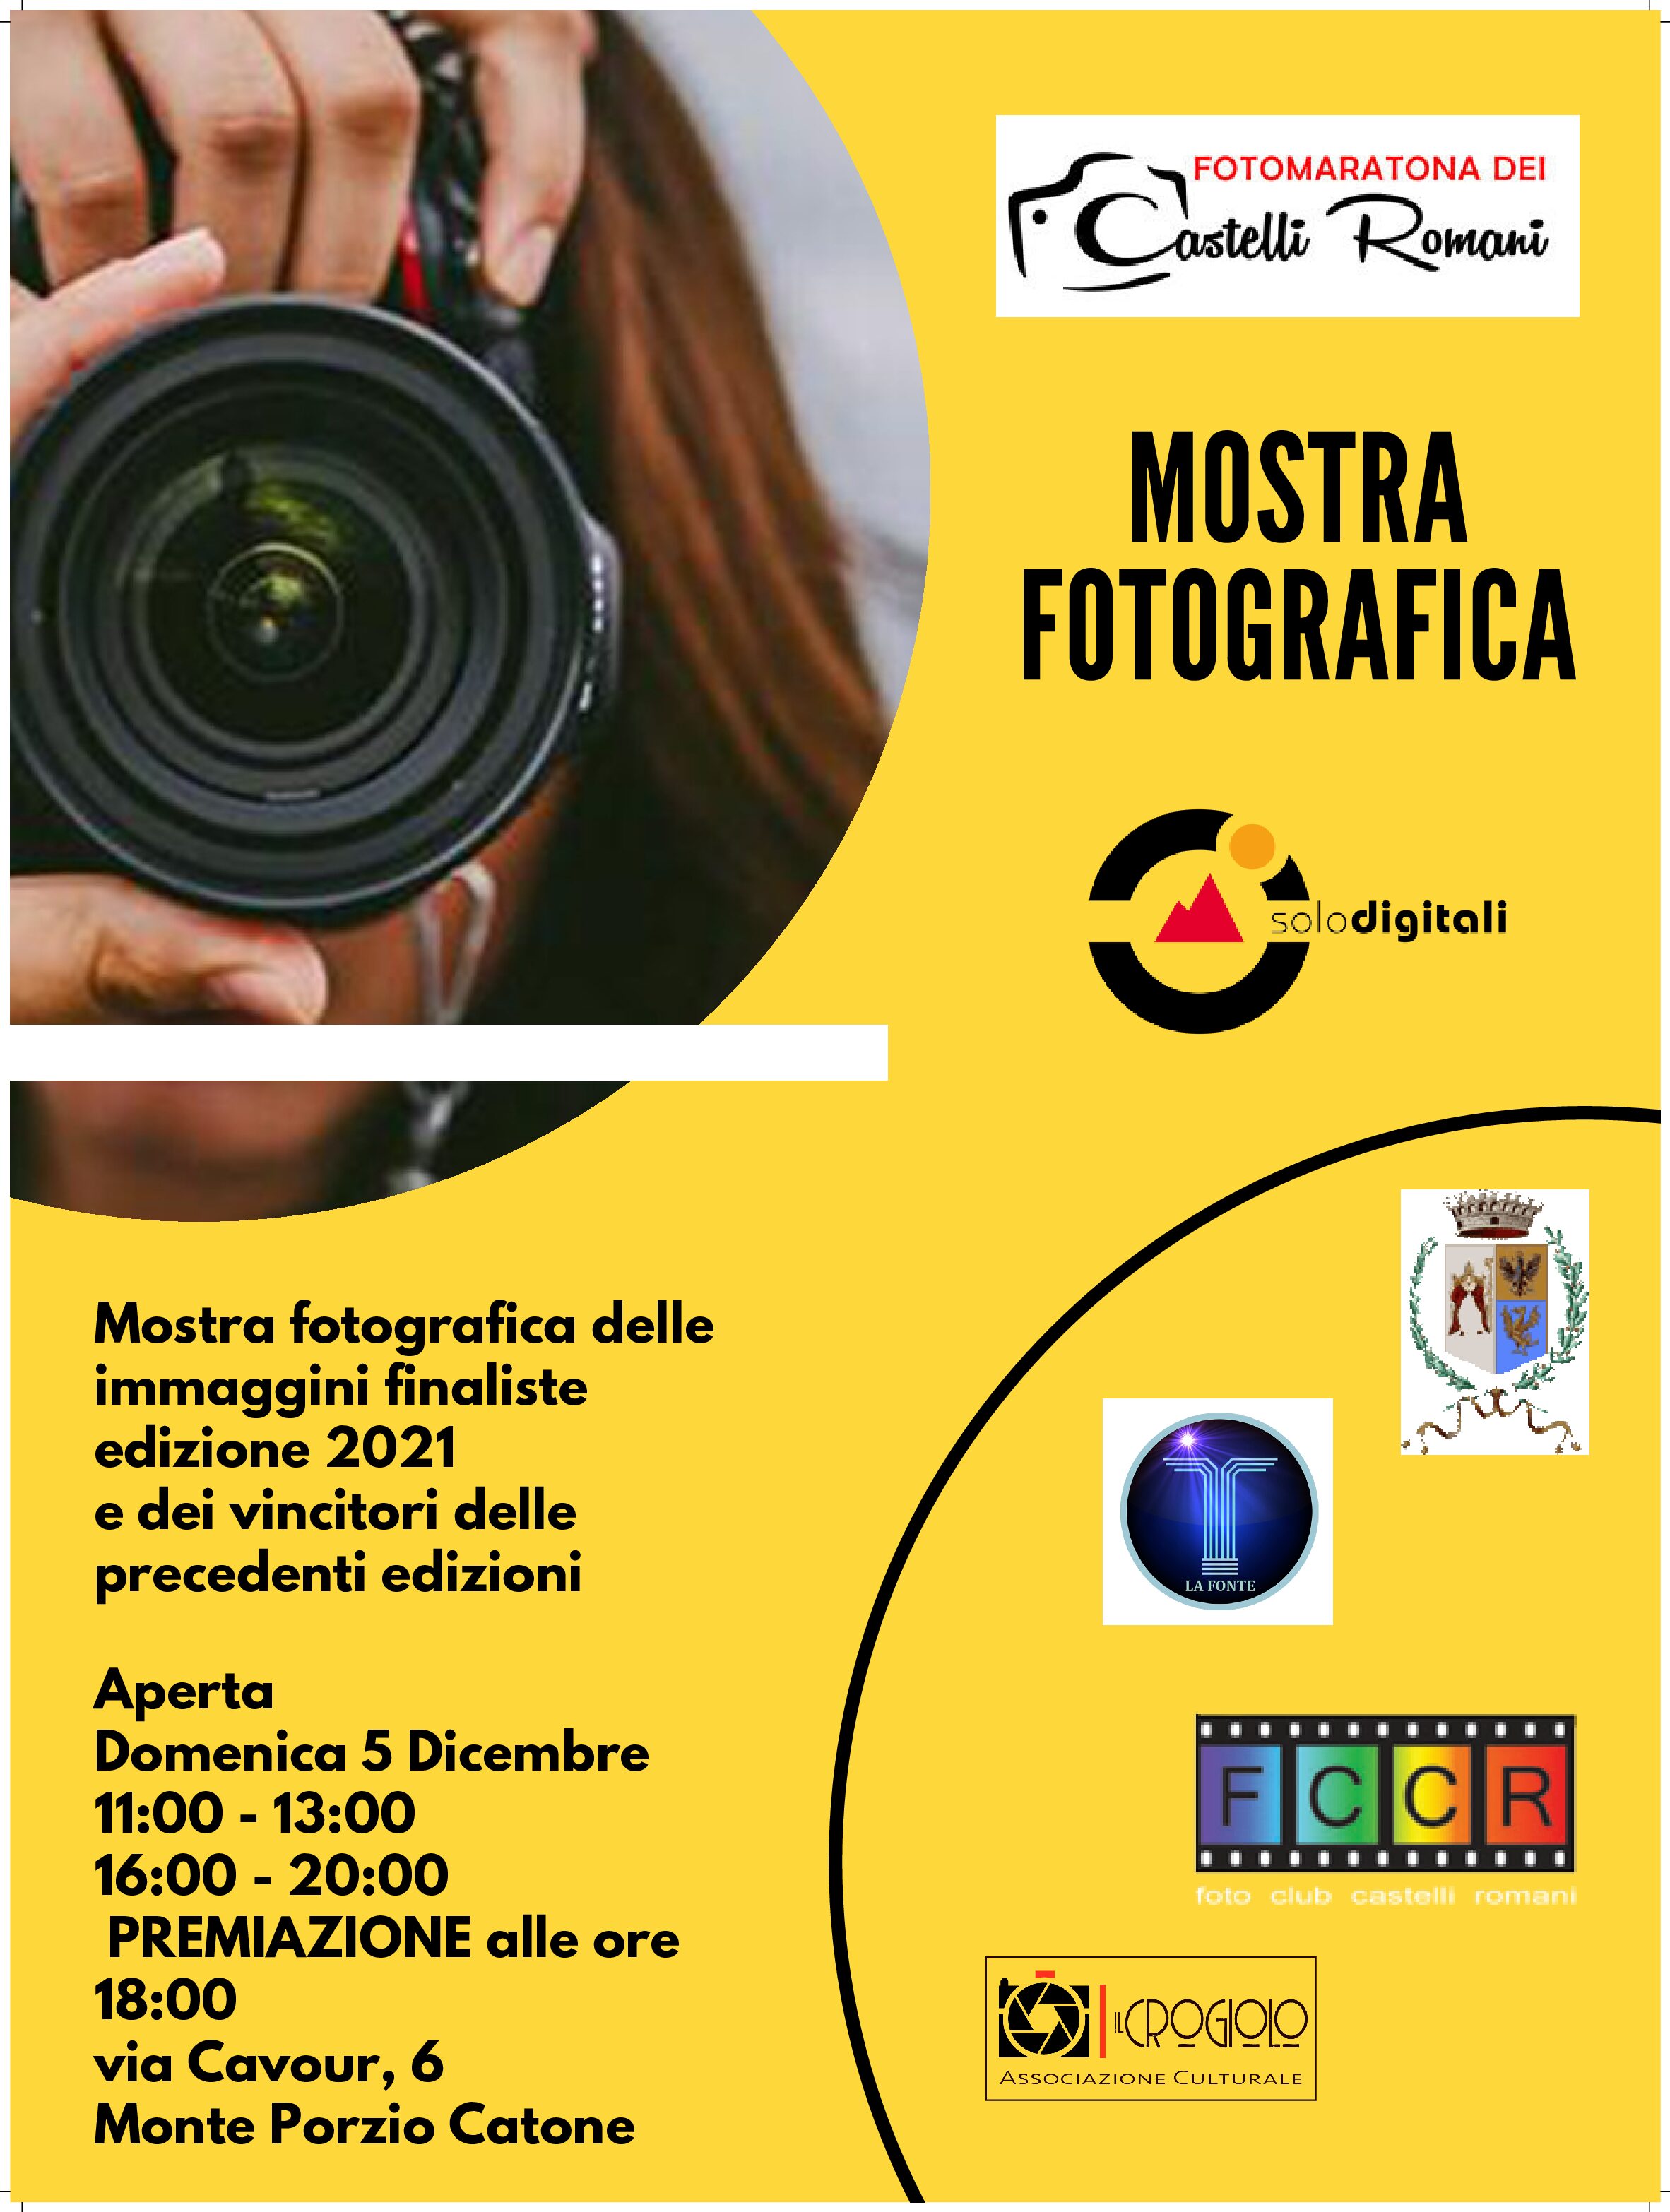 Mostra fotografica + Premiazione Fotomaratona 2021